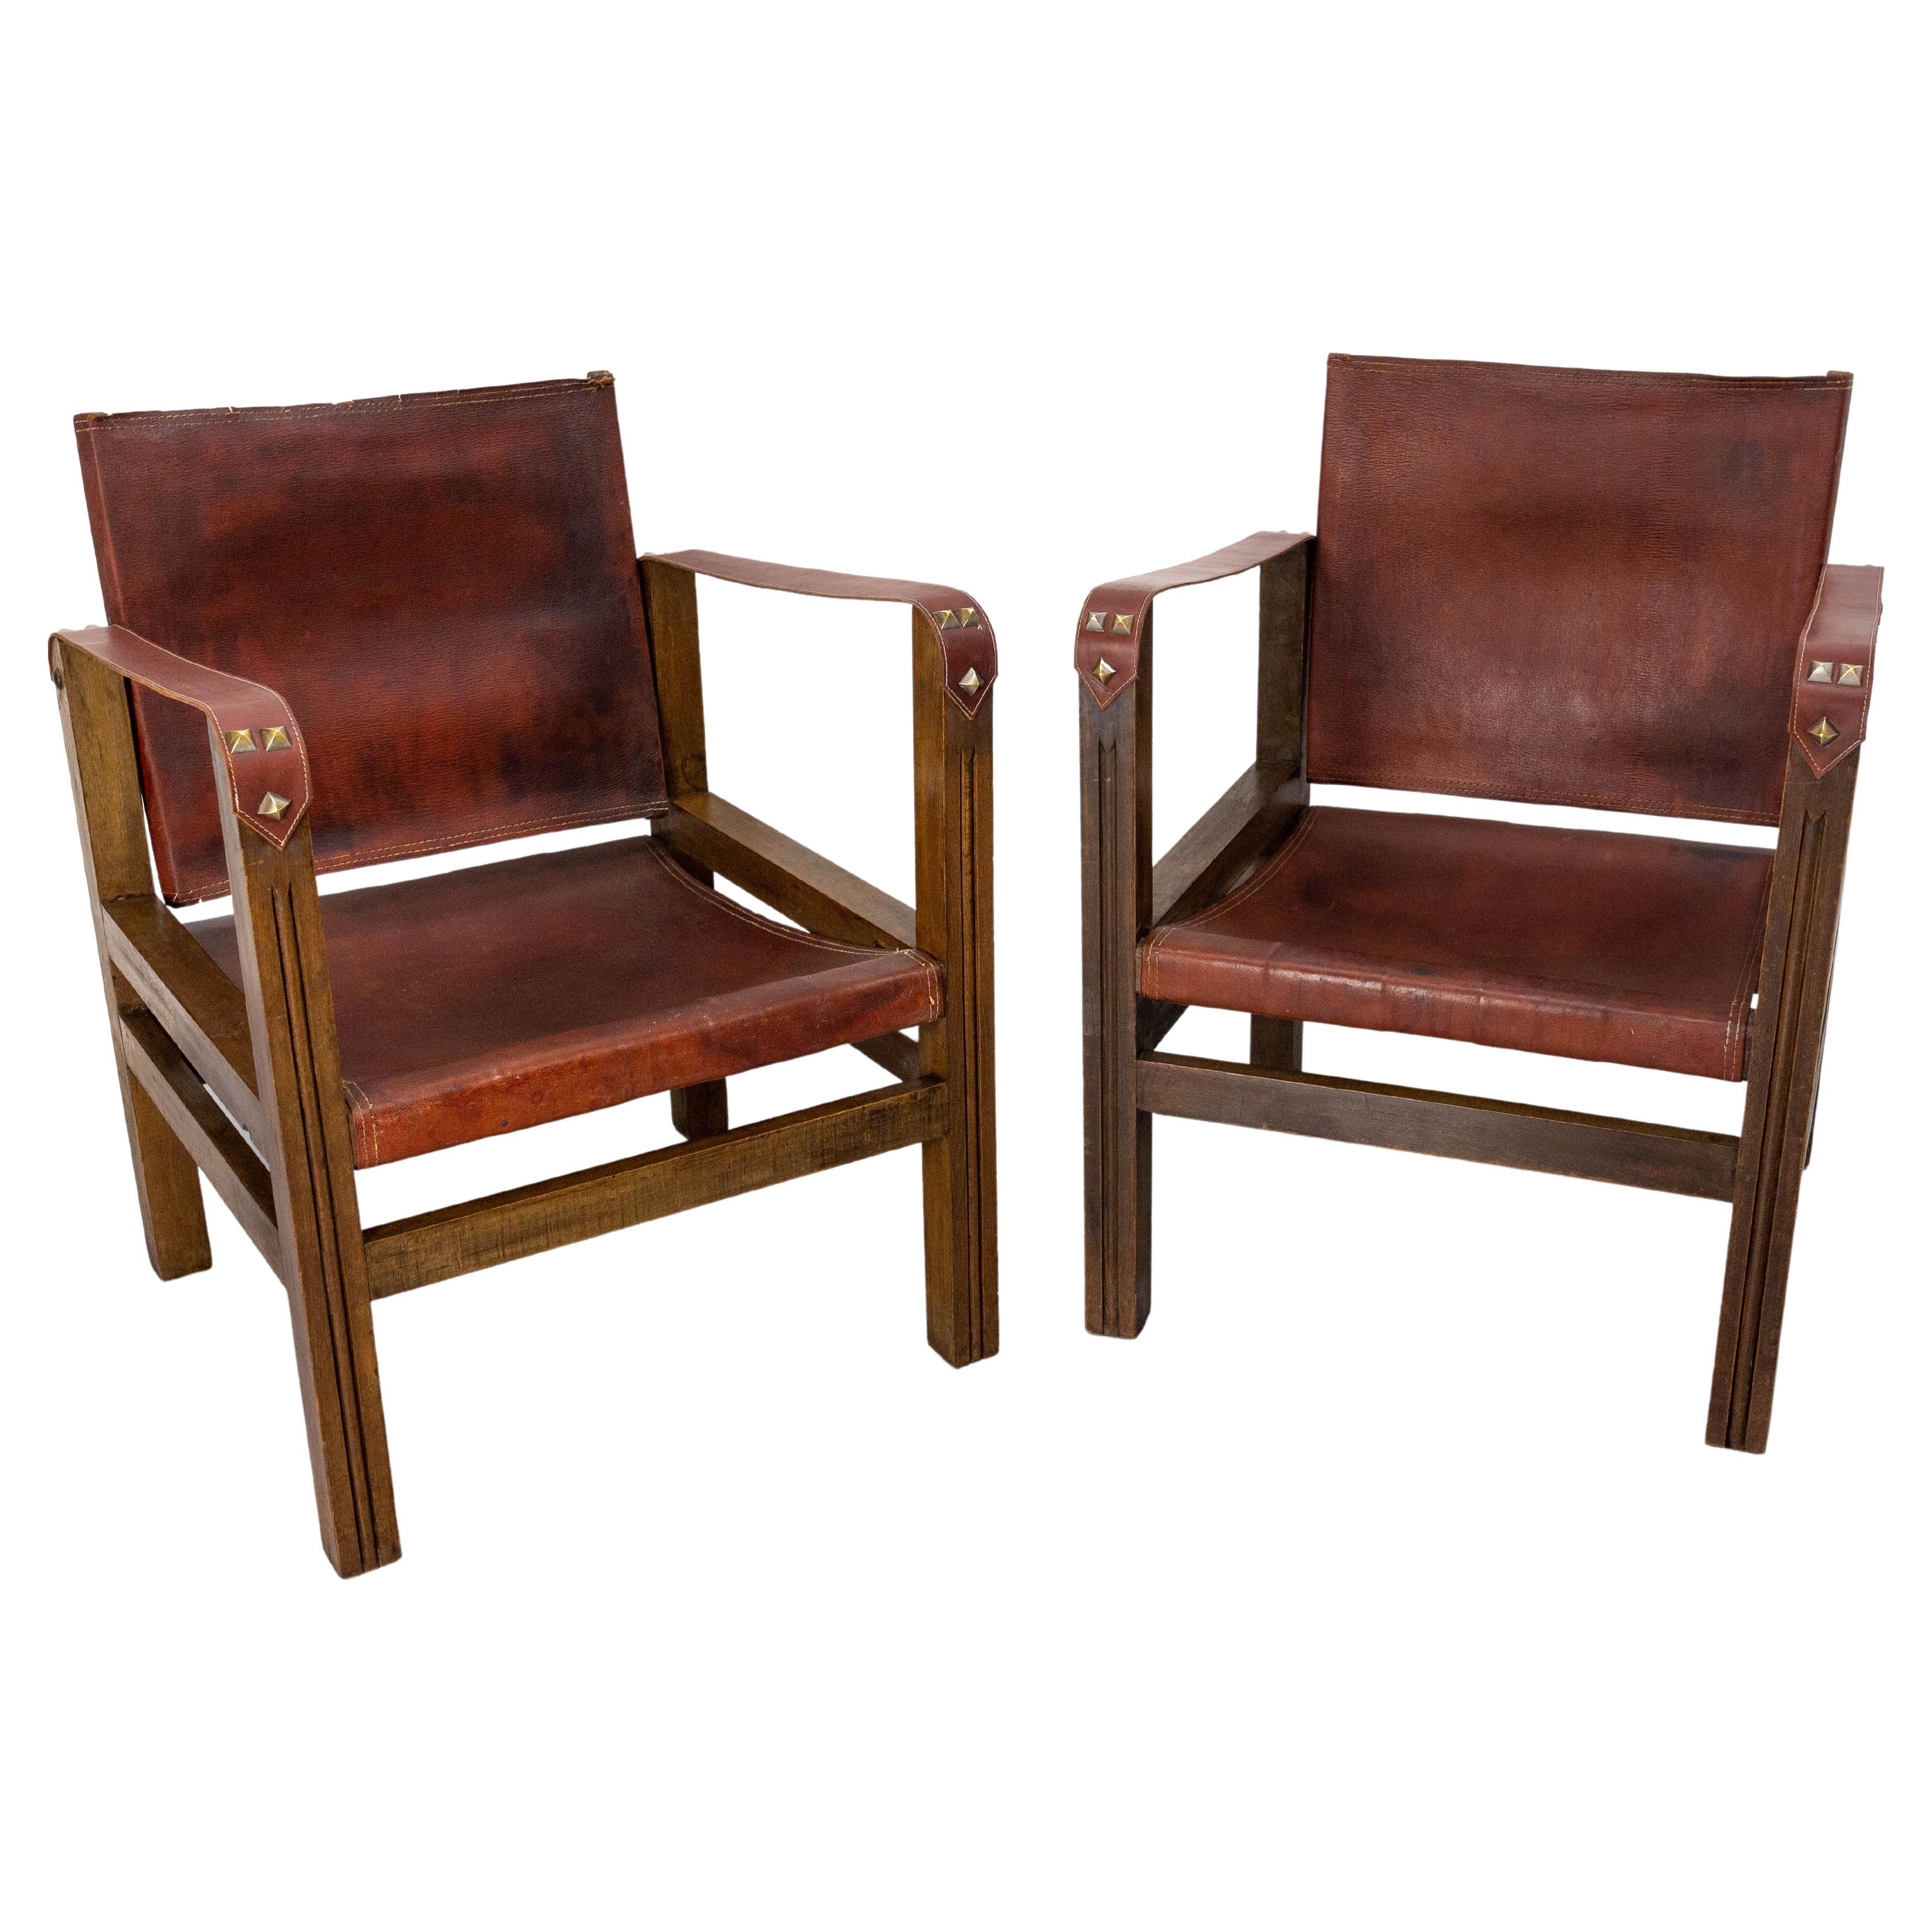 Offene Fauteuils-Sessel aus französischem Leder und Buche im Safari-Stil, um 1940, Paar